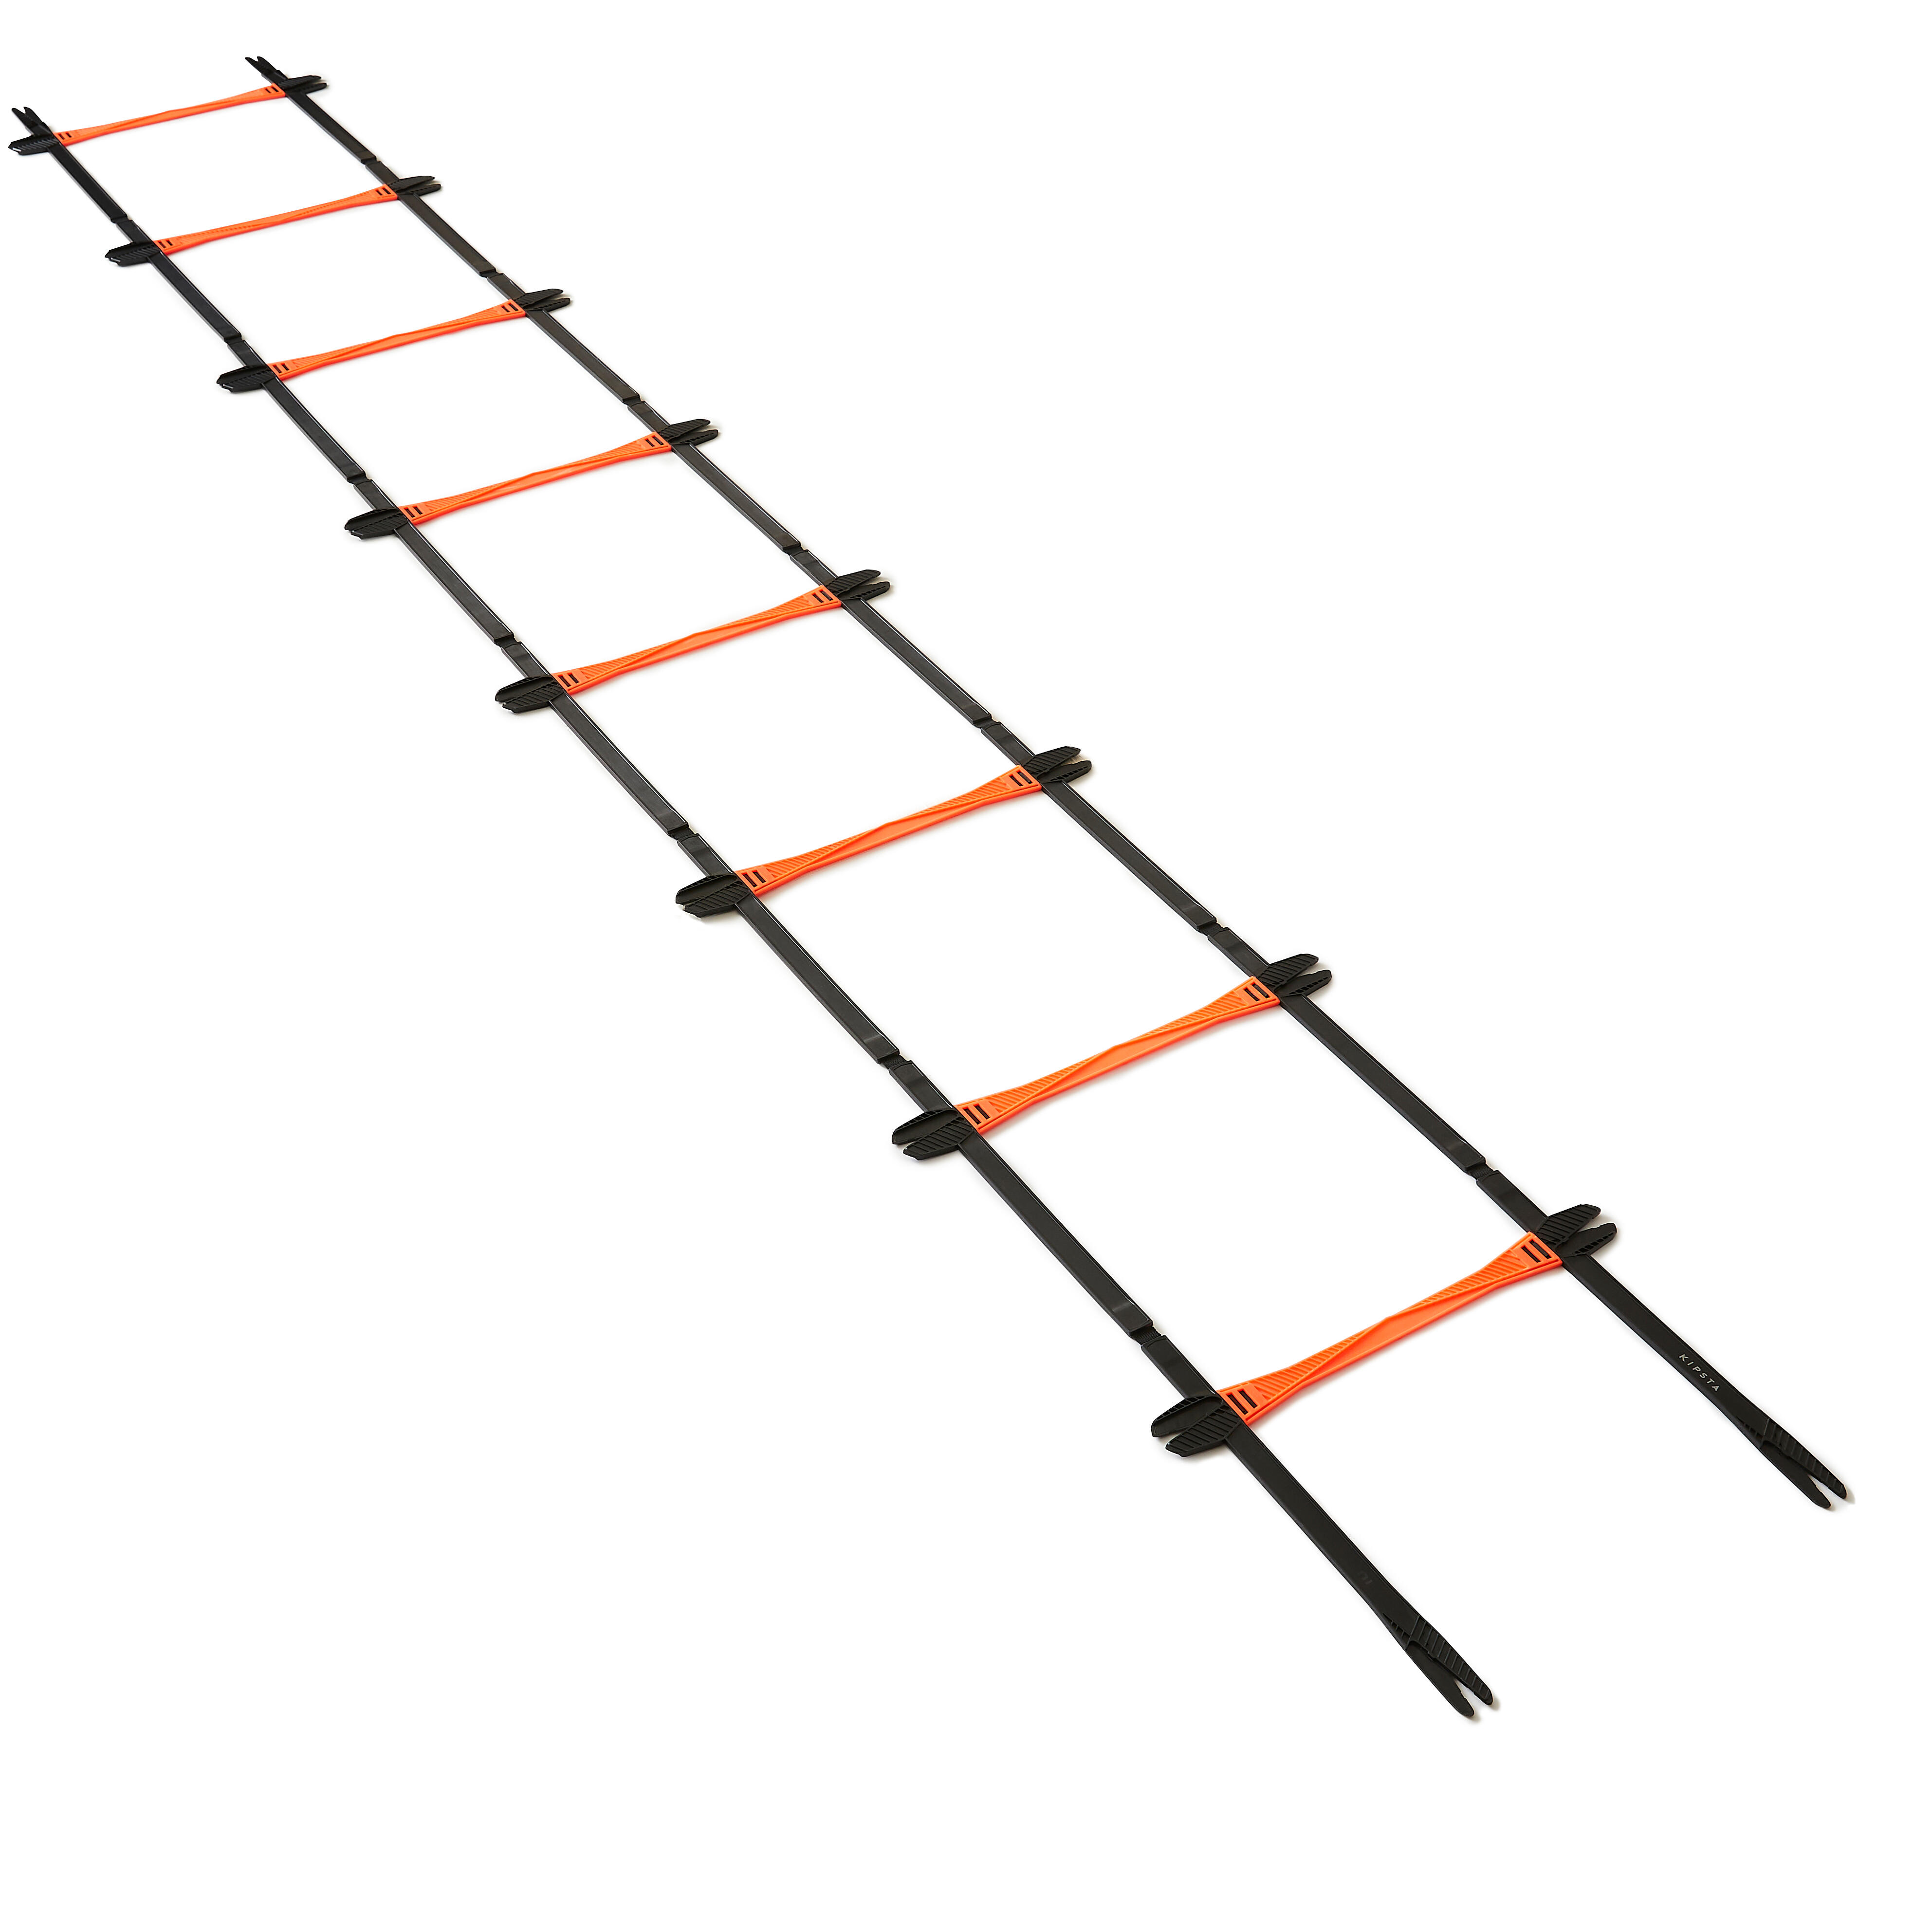 Оранжевая модульная тренировочная лестница Kipsta оптовая продажа высокое качество регулируемая футбольная тренировочная скорость вставка пряжка лестница гибкая лестница с черной сумк